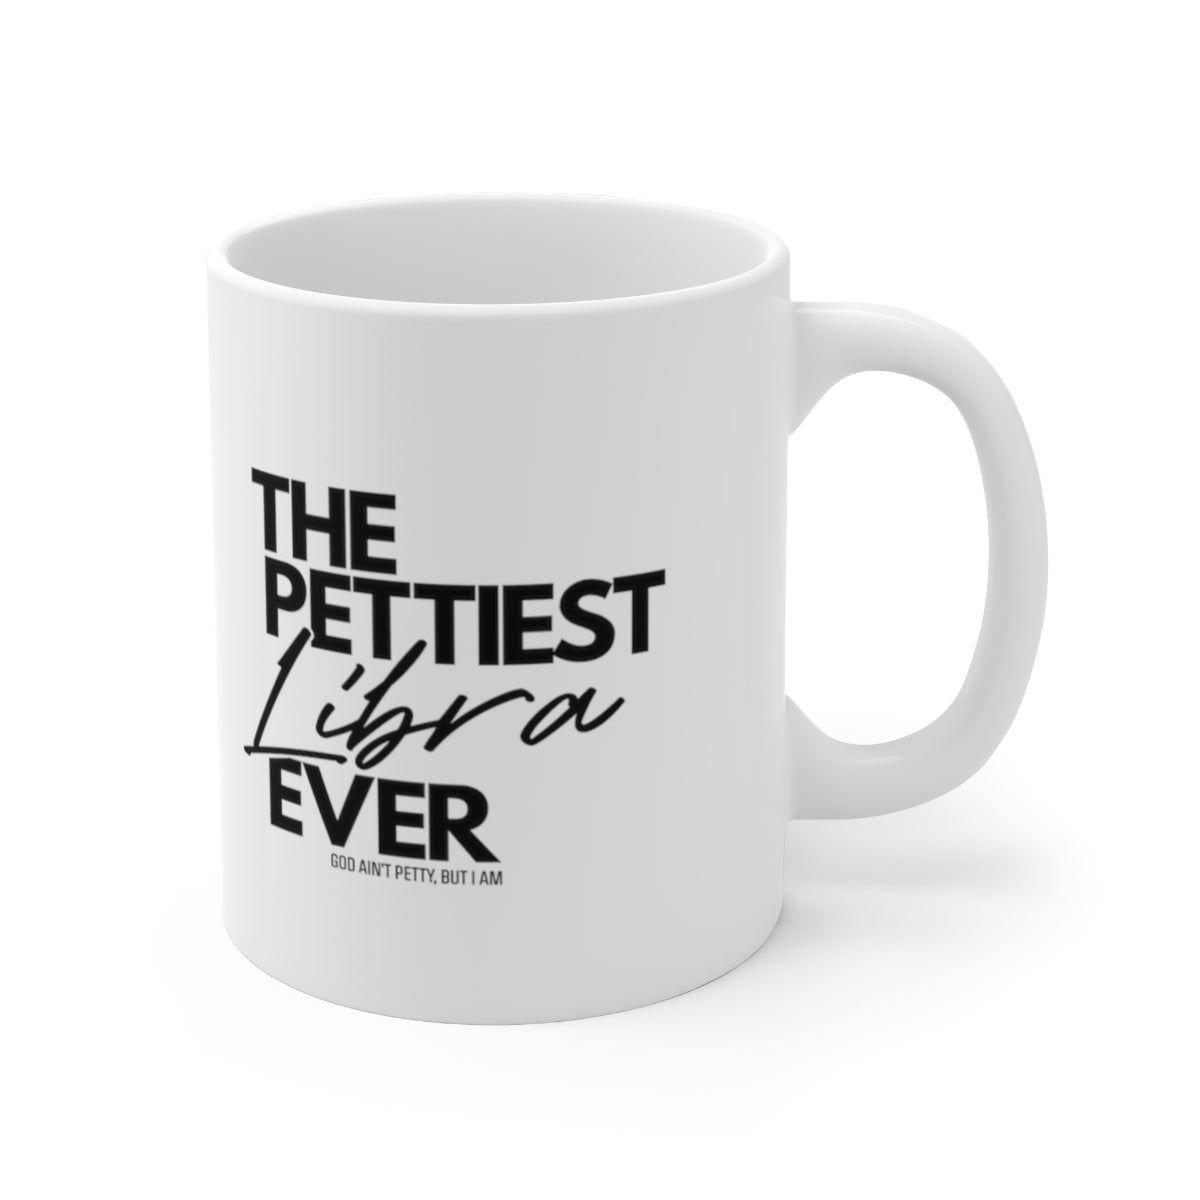 The Pettiest Libra Ever Mug 11oz (White/Black)-Mug-The Original God Ain't Petty But I Am